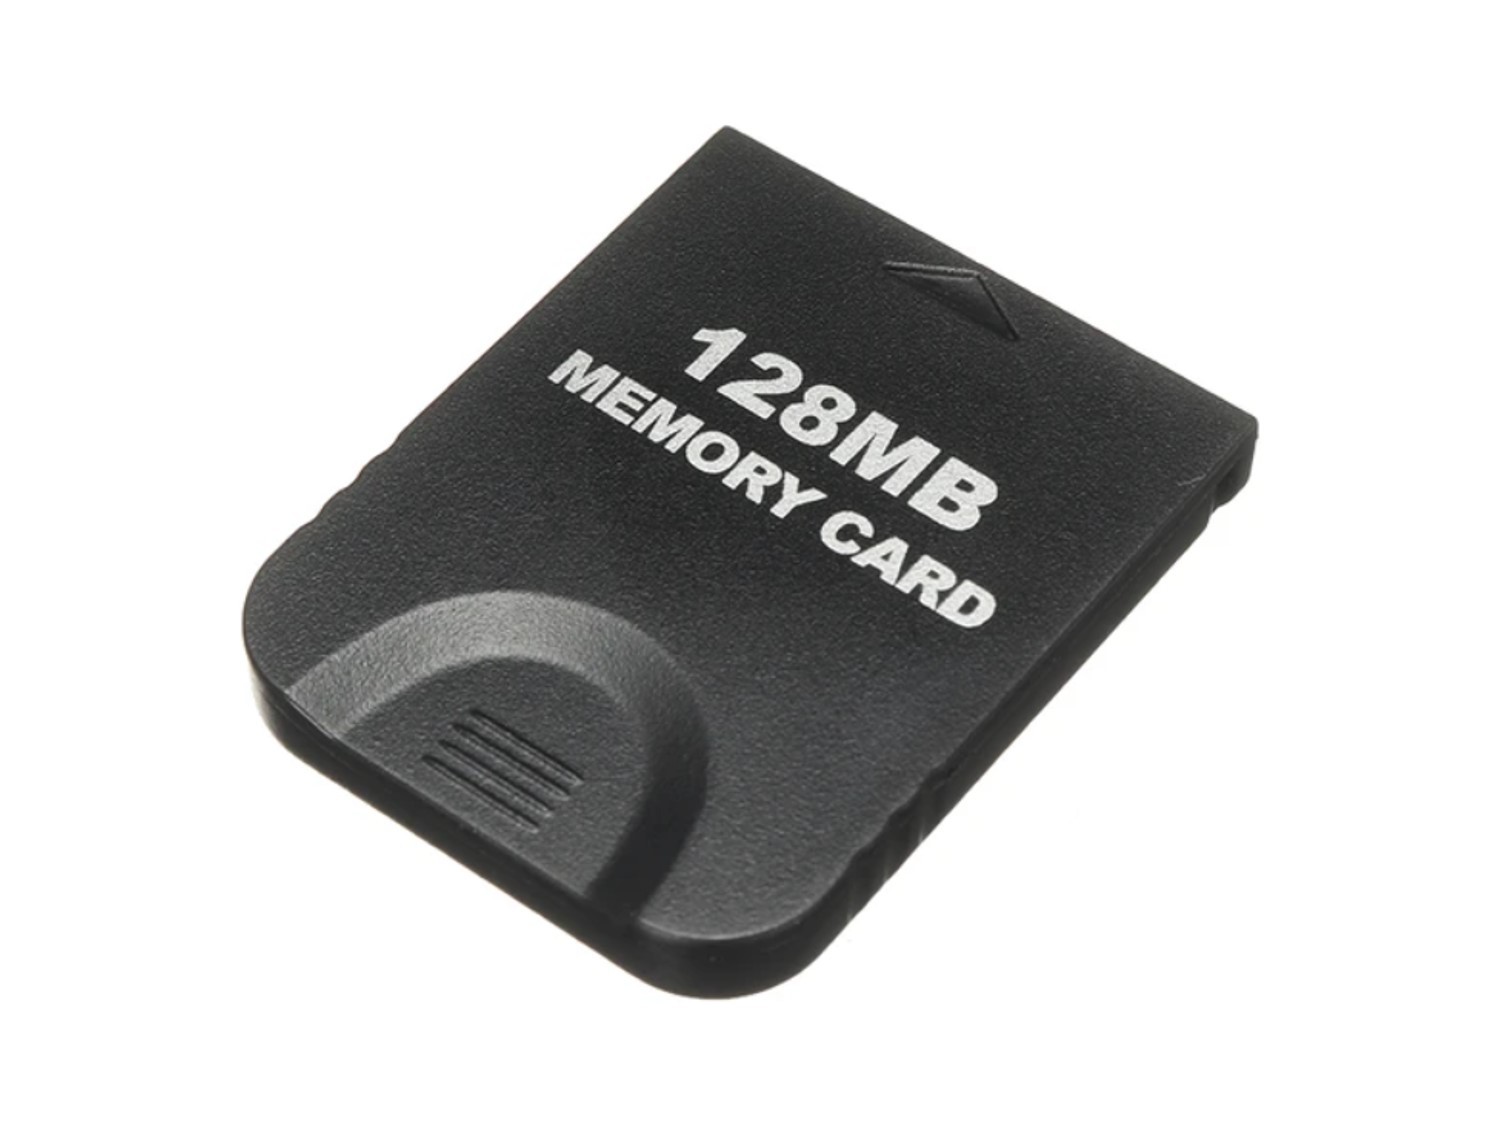 Nieuwe Gamecube Memory Card 128MB - Zwart - Gamecube Hardware